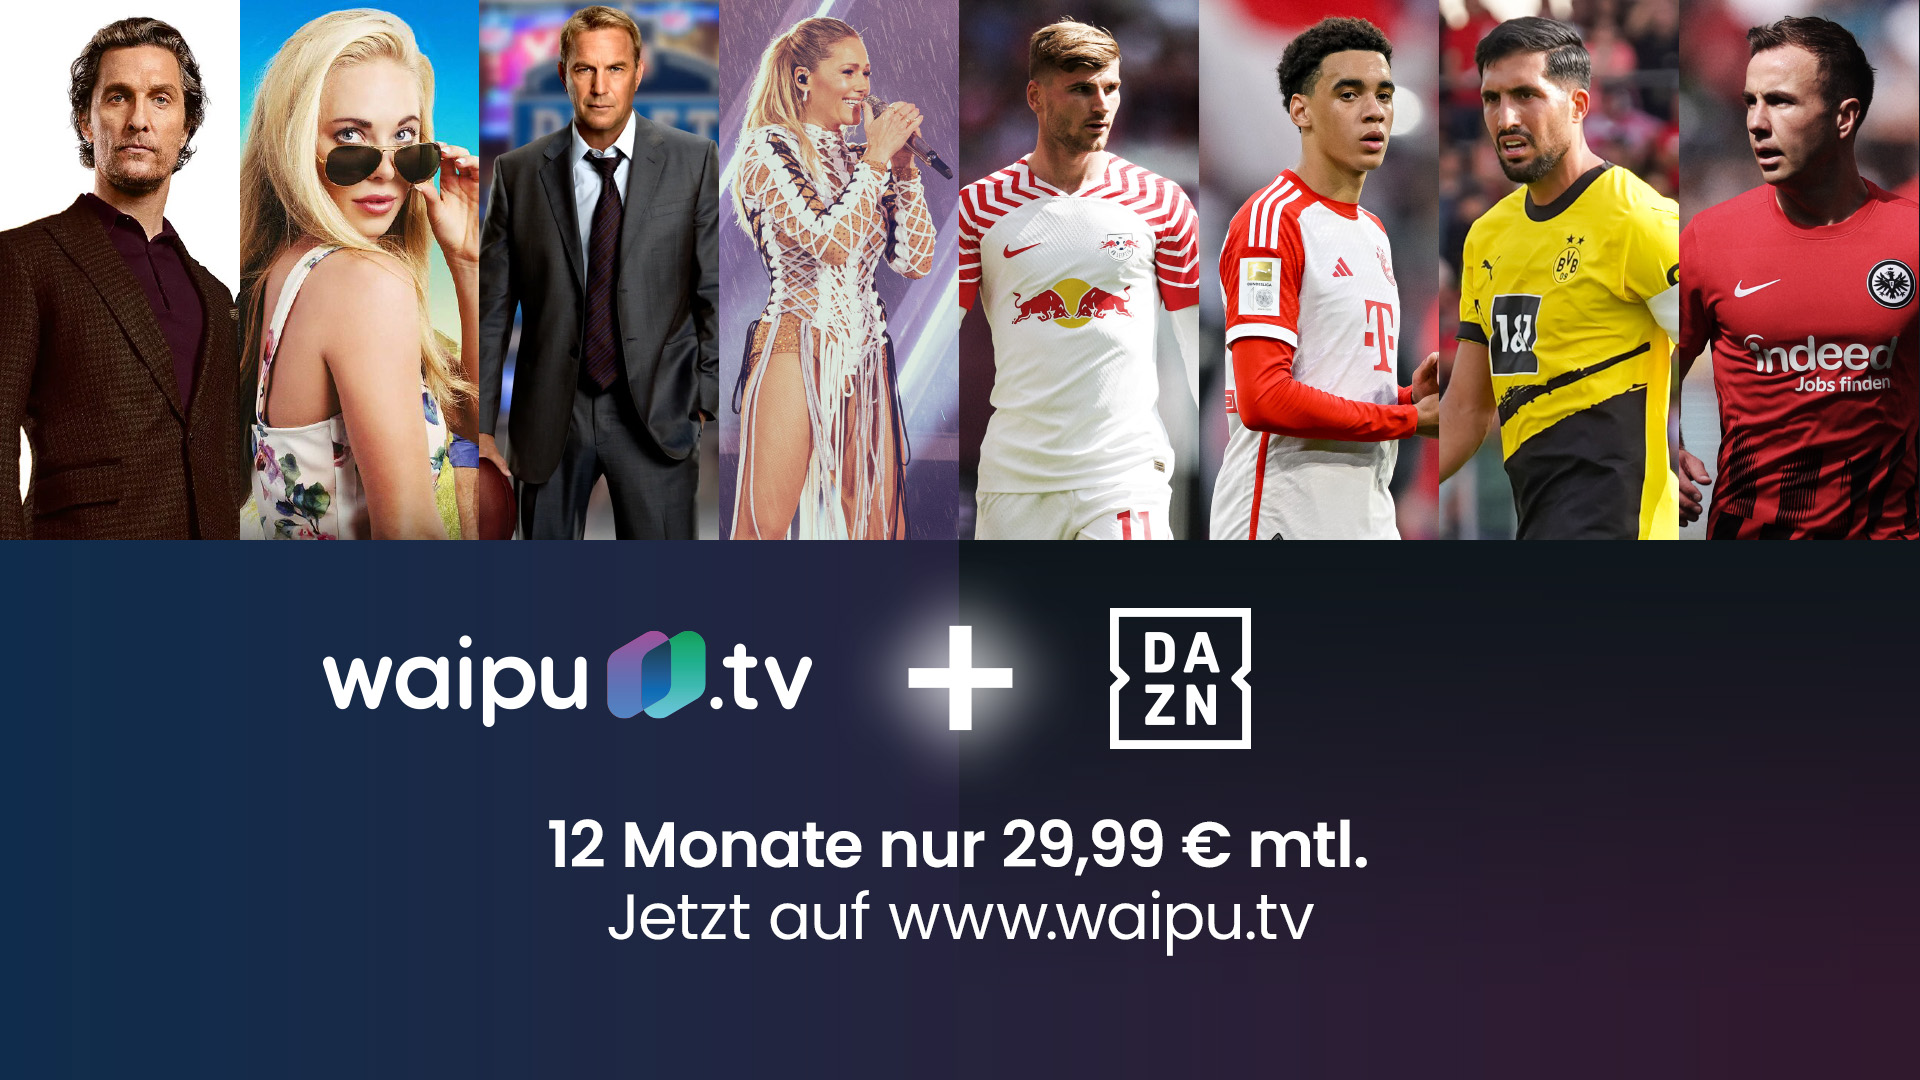 waipu.tv 25 neues mit Prozent UNLIMITED-Angebot Rabatt launcht DAZN